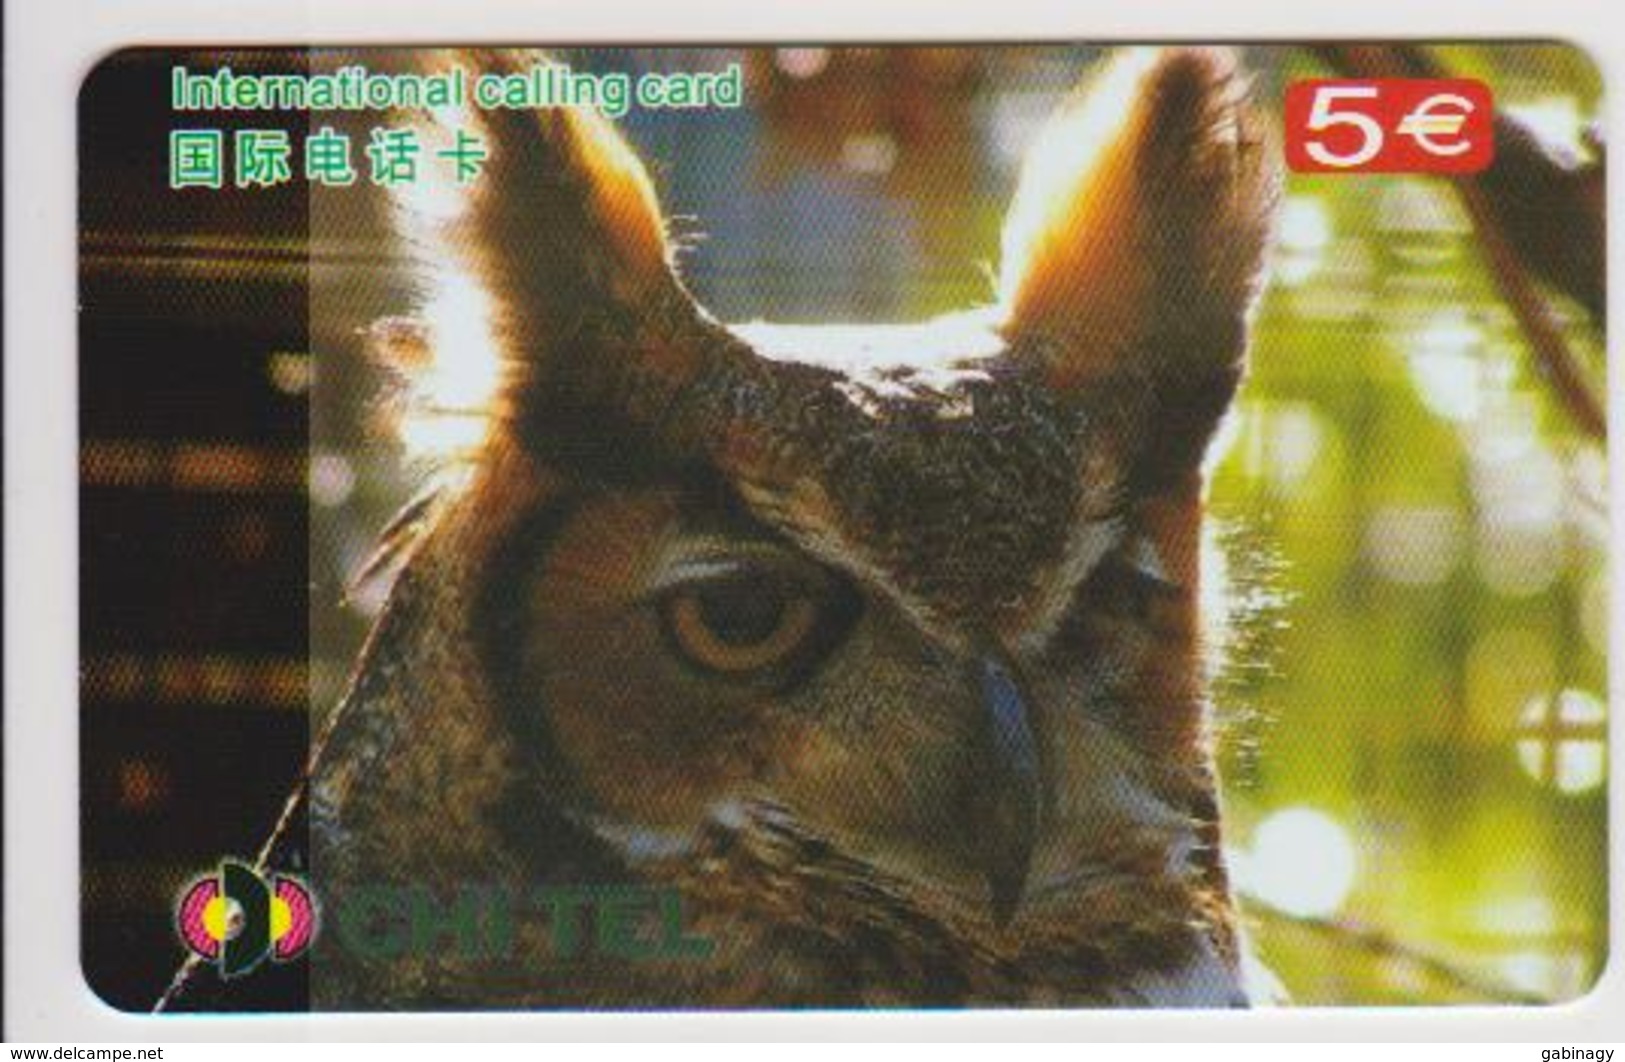 OWL - CHINA-03 - Owls